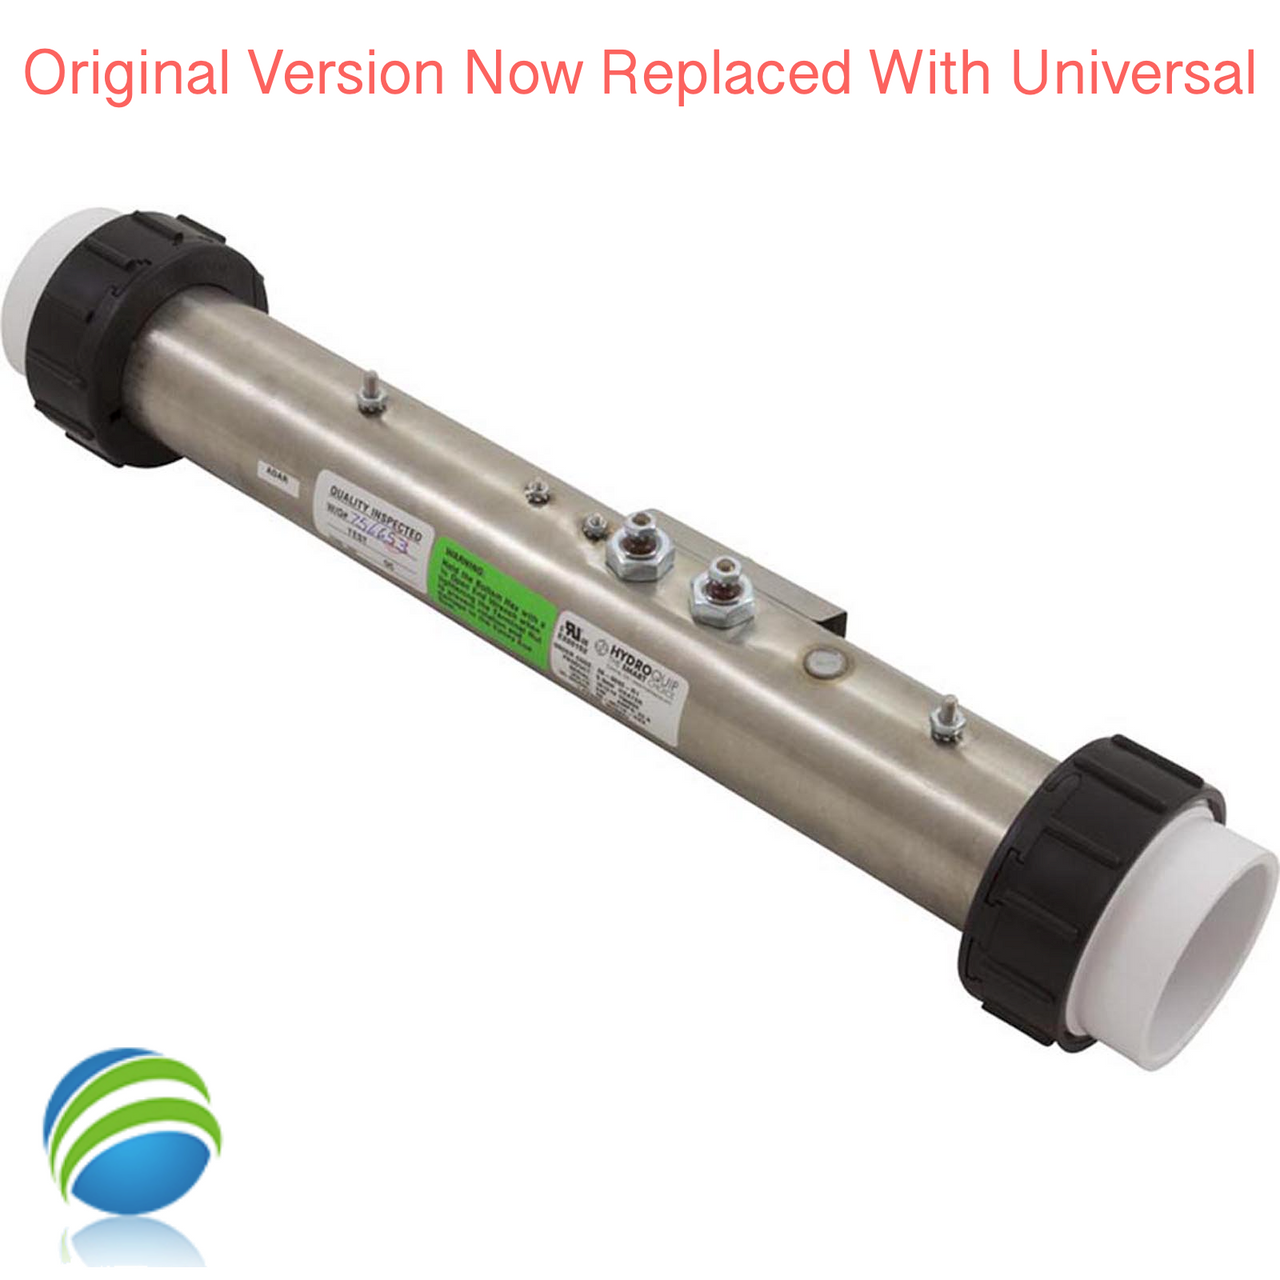 Hydro-Quip Universal 5.5 KW Flo-Thru Heater, 15" Original, Now Universal!